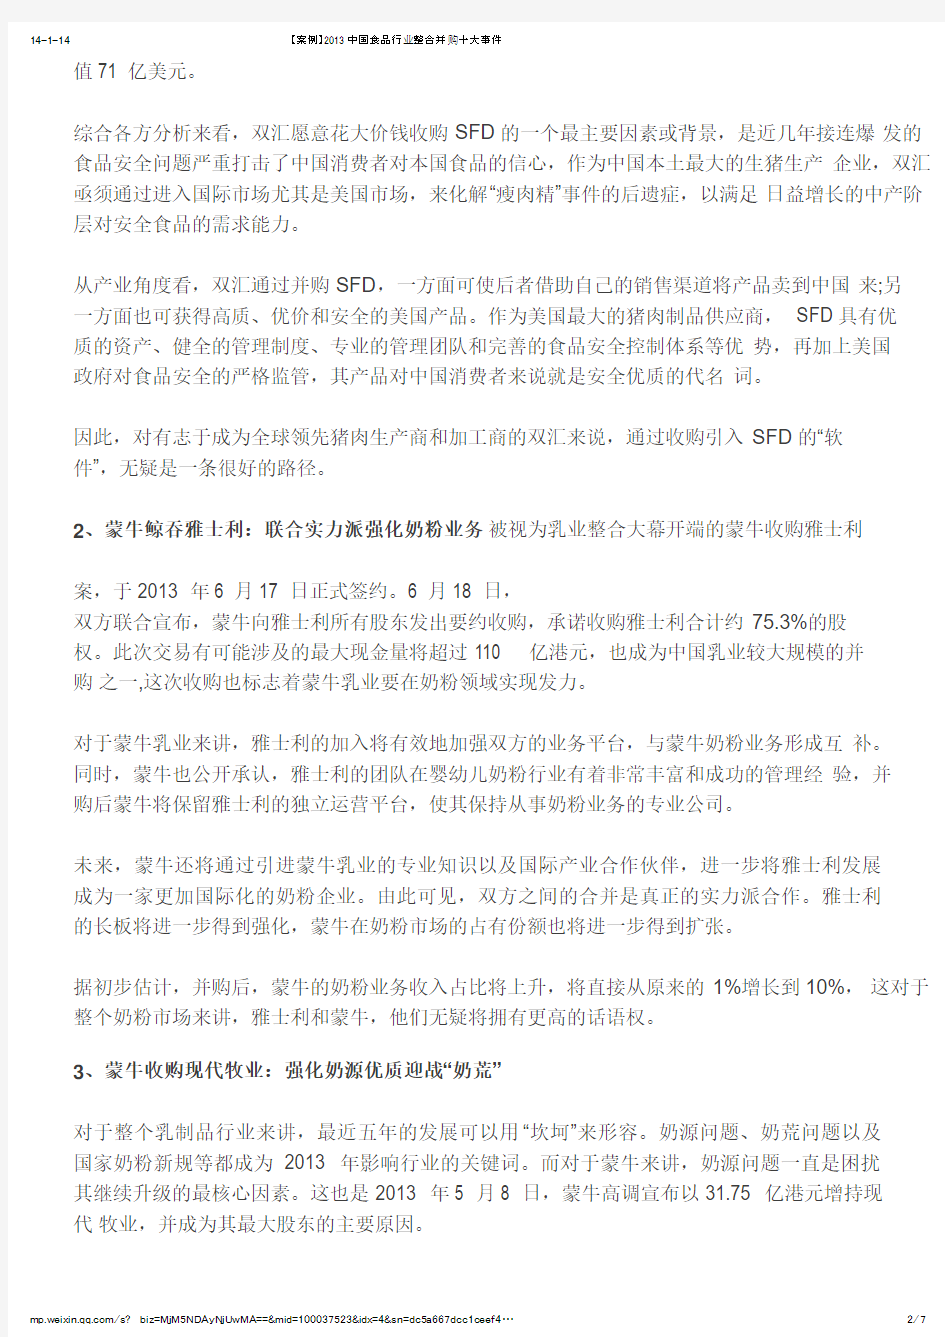 【案例】2013中国食品行业整合并购十大事件